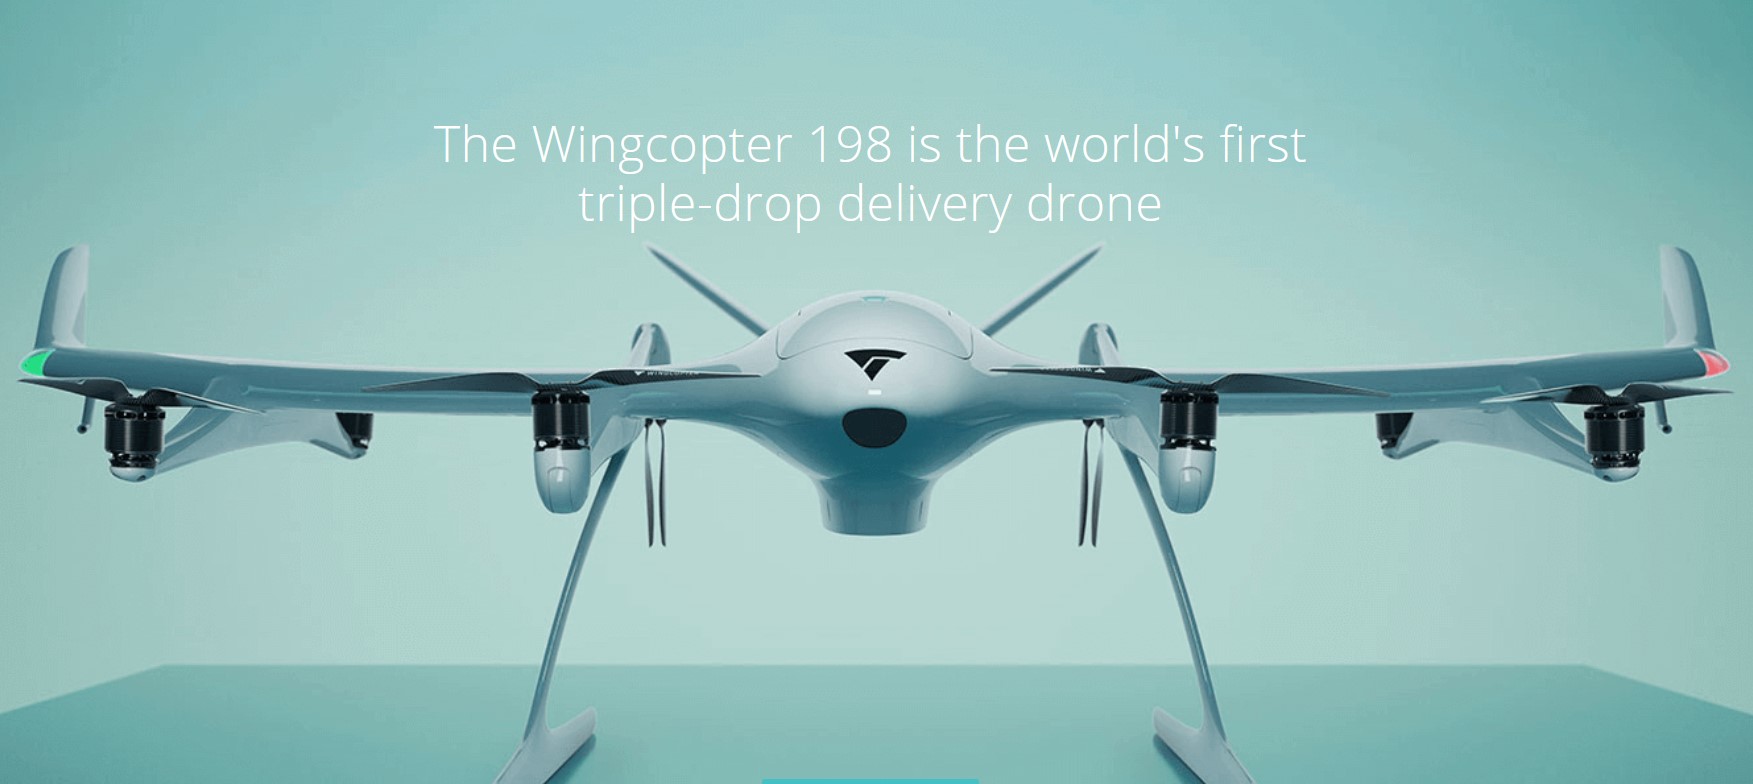 Le drone allemand Wingcopter peut opérer 3 livraisons différentes